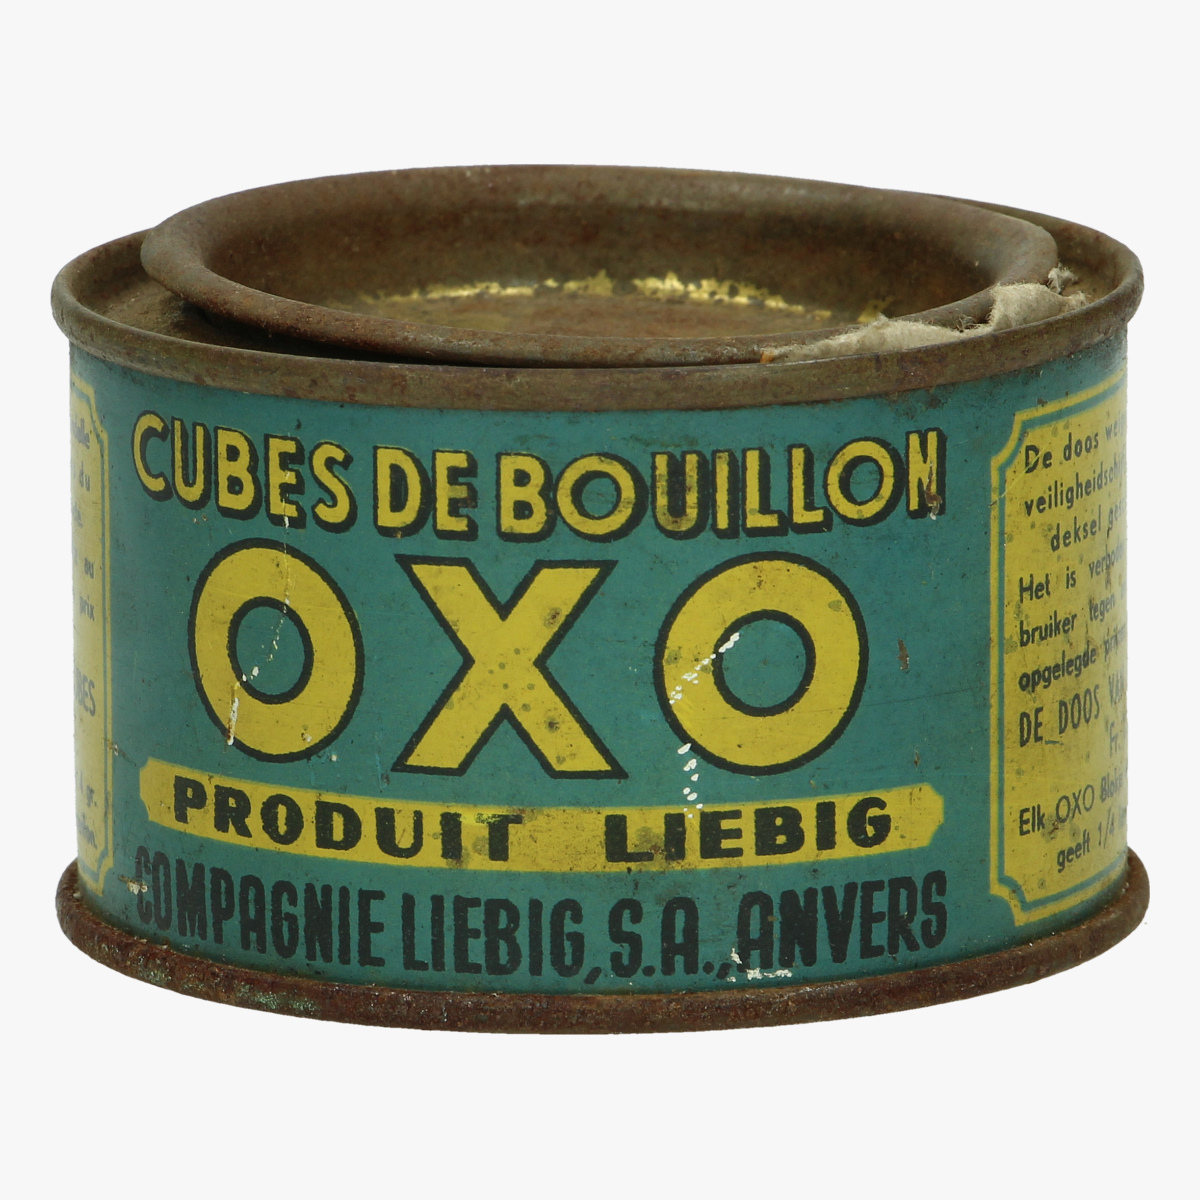 Afbeeldingen van oude verpakking oxo cubes de bouillon produit liebig